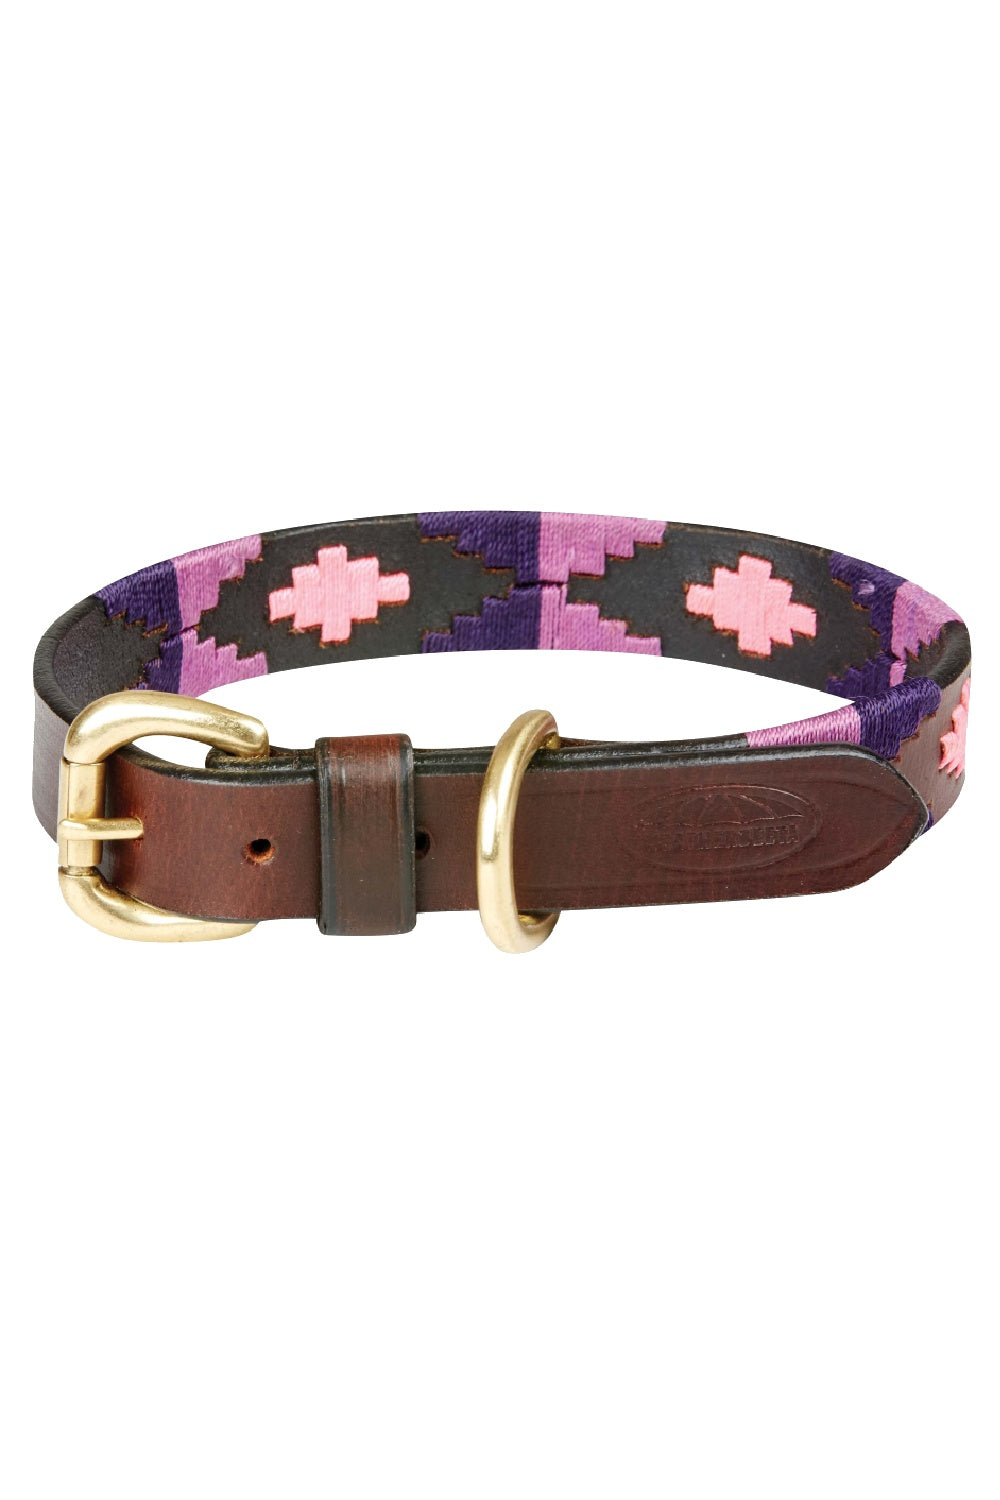 WeatherBeeta Polo Leather Dog Collar in Cowdray Brown/Purple/Purple 